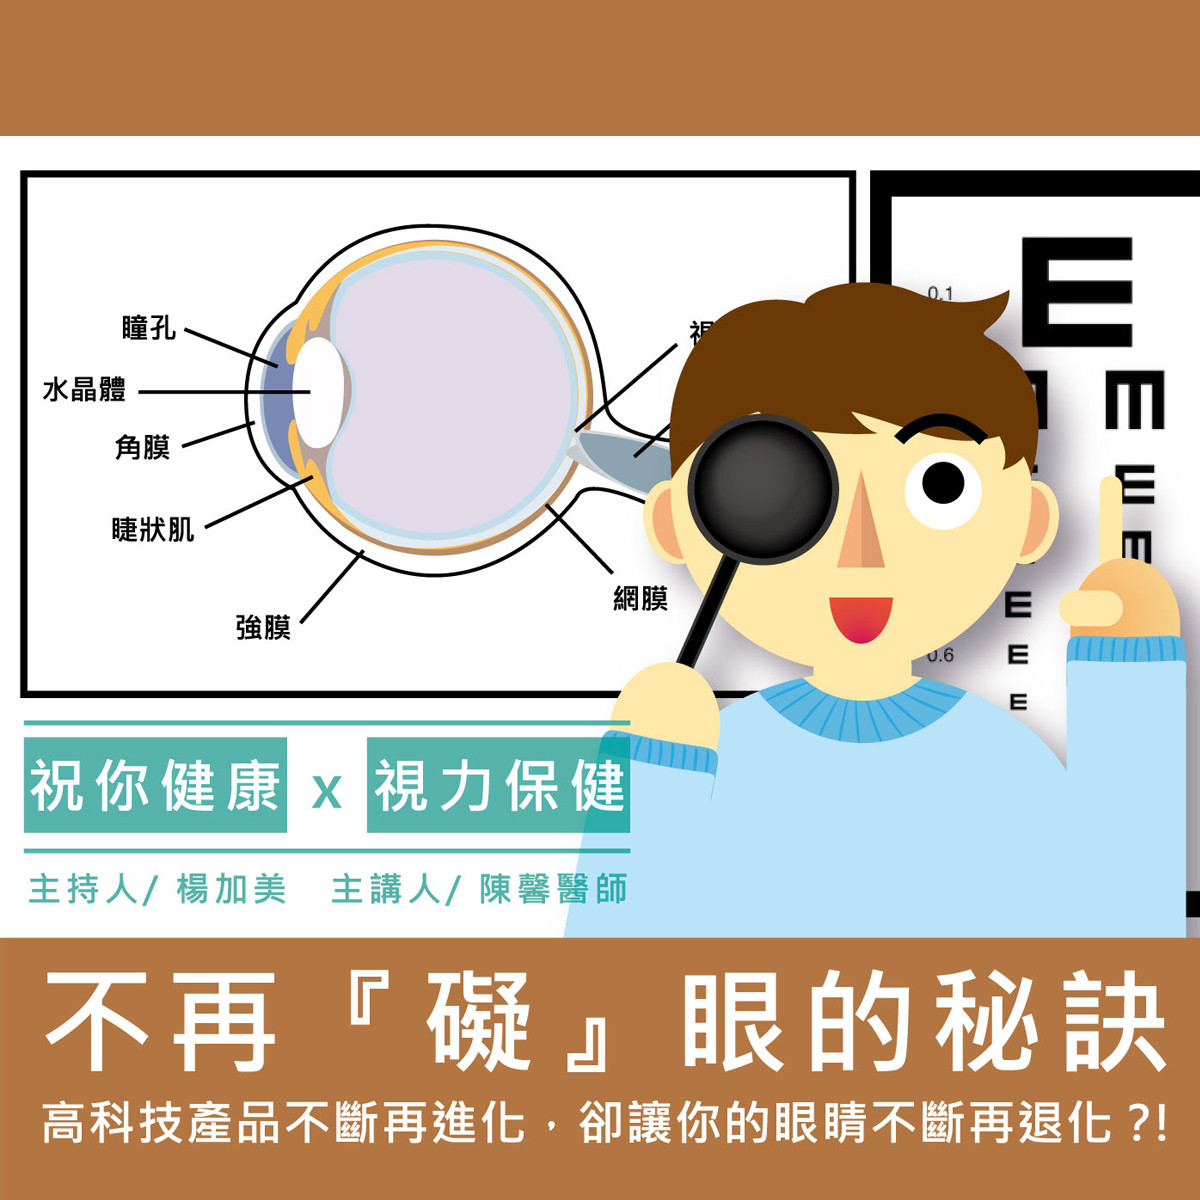 【祝你健康】視力保健 - 8.弱視封面圖